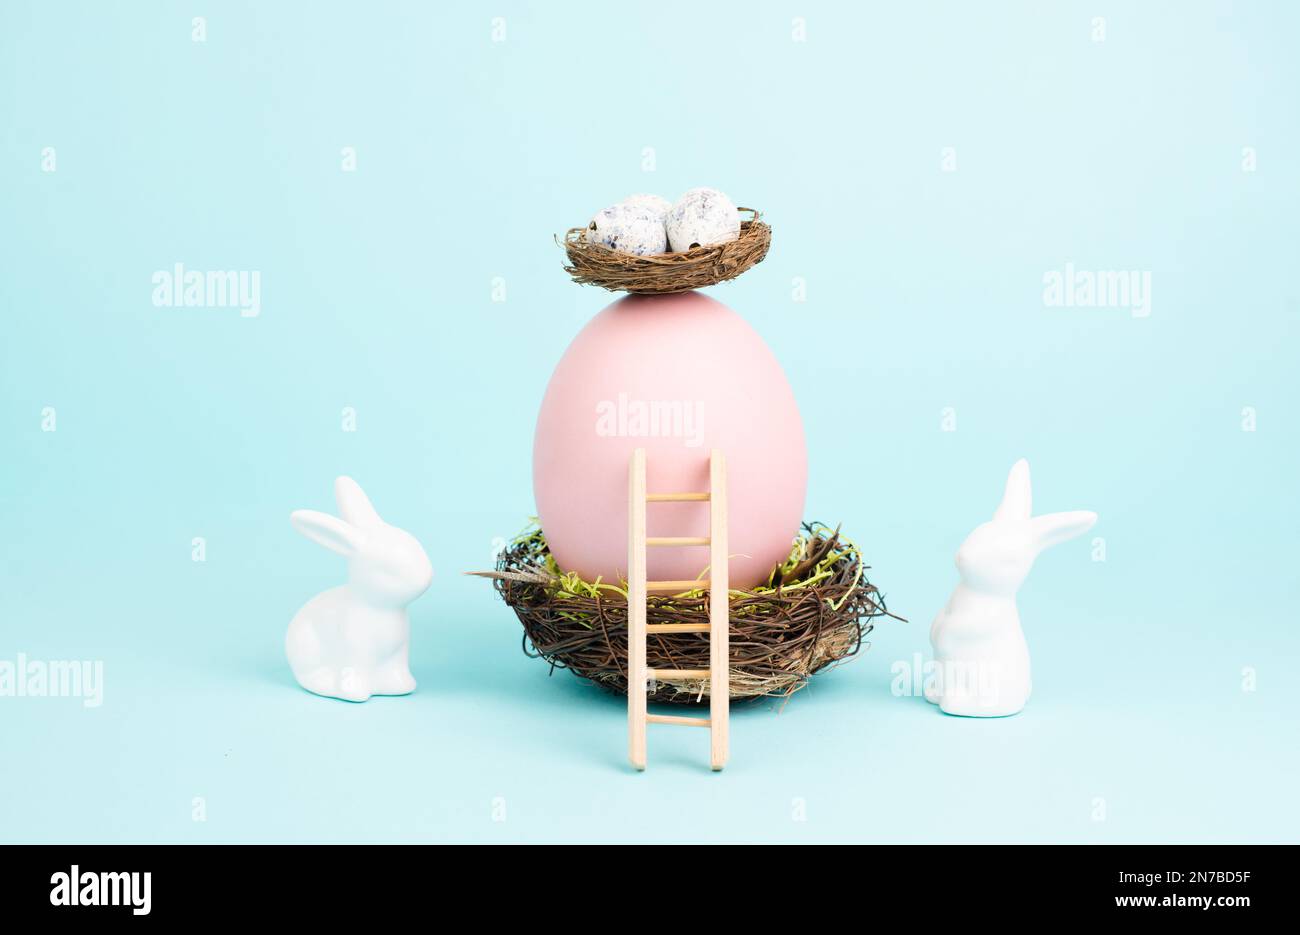 Lapin ou lapin de Pâques assis à côté d'un énorme œuf de couleur rose dans un nid d'oiseaux, ruban cadeau et échelle, vacances de printemps Banque D'Images